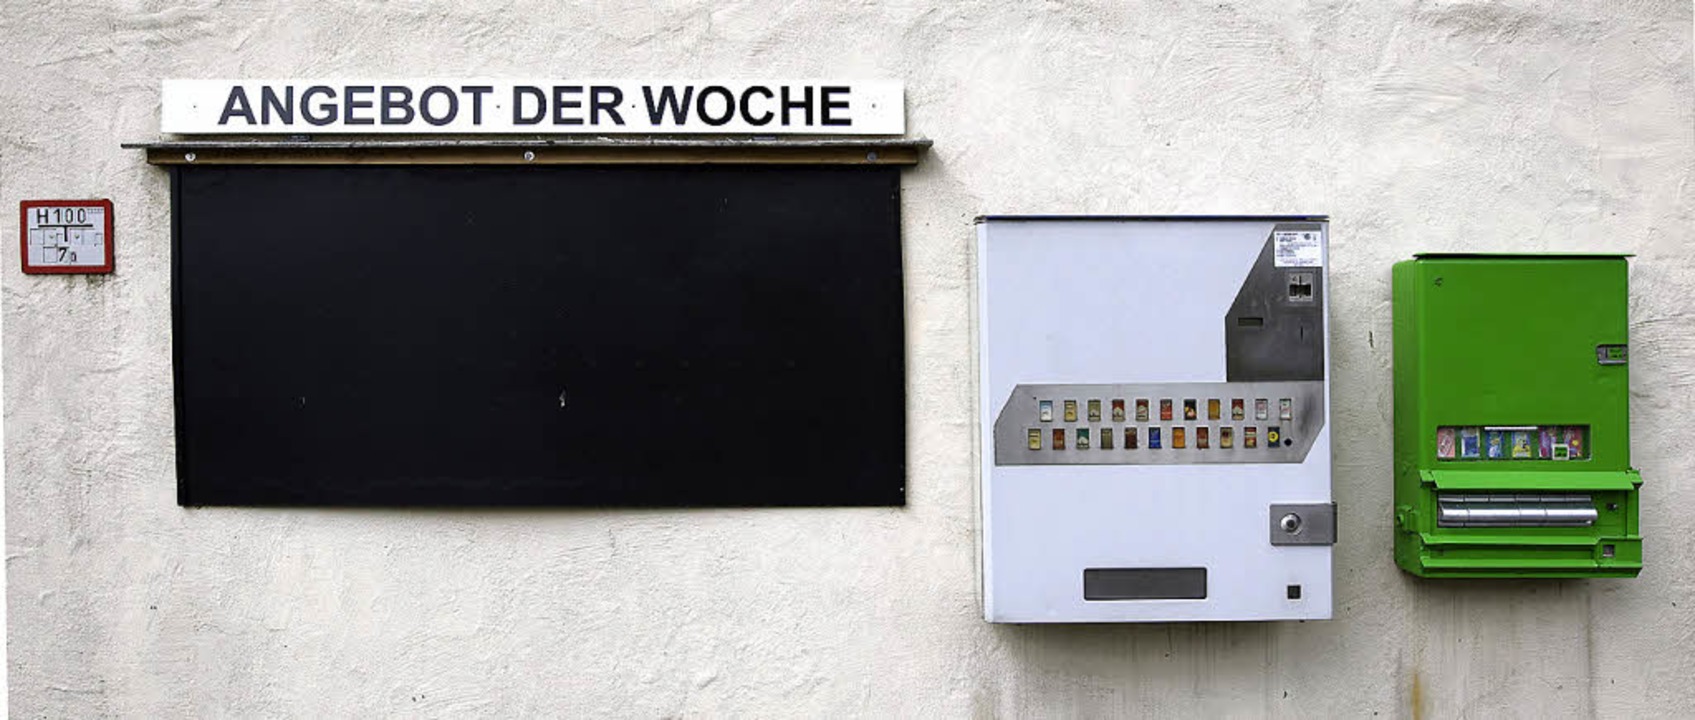 Jegliche Veroeffentlichung unabhaengig...lation der IPTC-Daten nicht gestattet.  | Foto: Christoph Pueschner/Zeitenspiegel